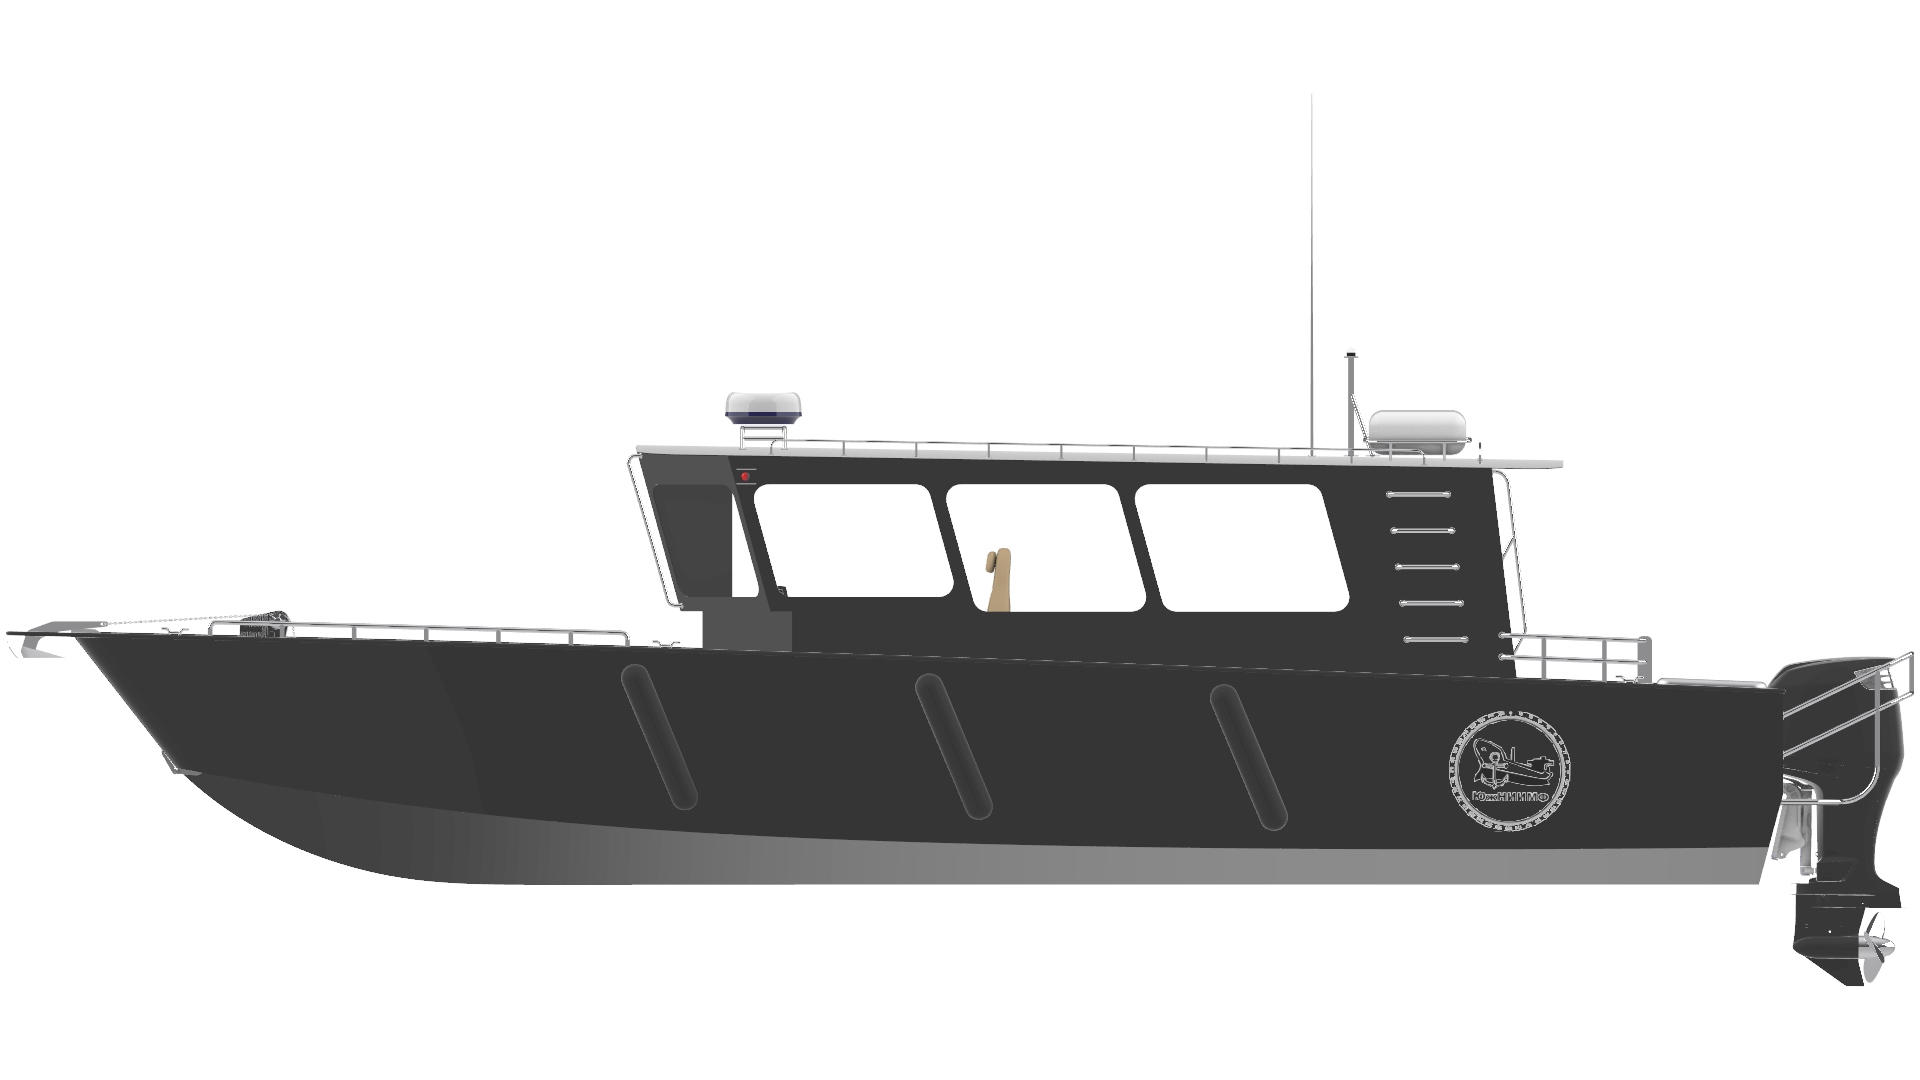 Проектирование маломерного судна для прибрежных пассажирских перевозок и досуга на воде (с повышенной или интегрированной рубкой) на основе эскизного проекта собственной разработки